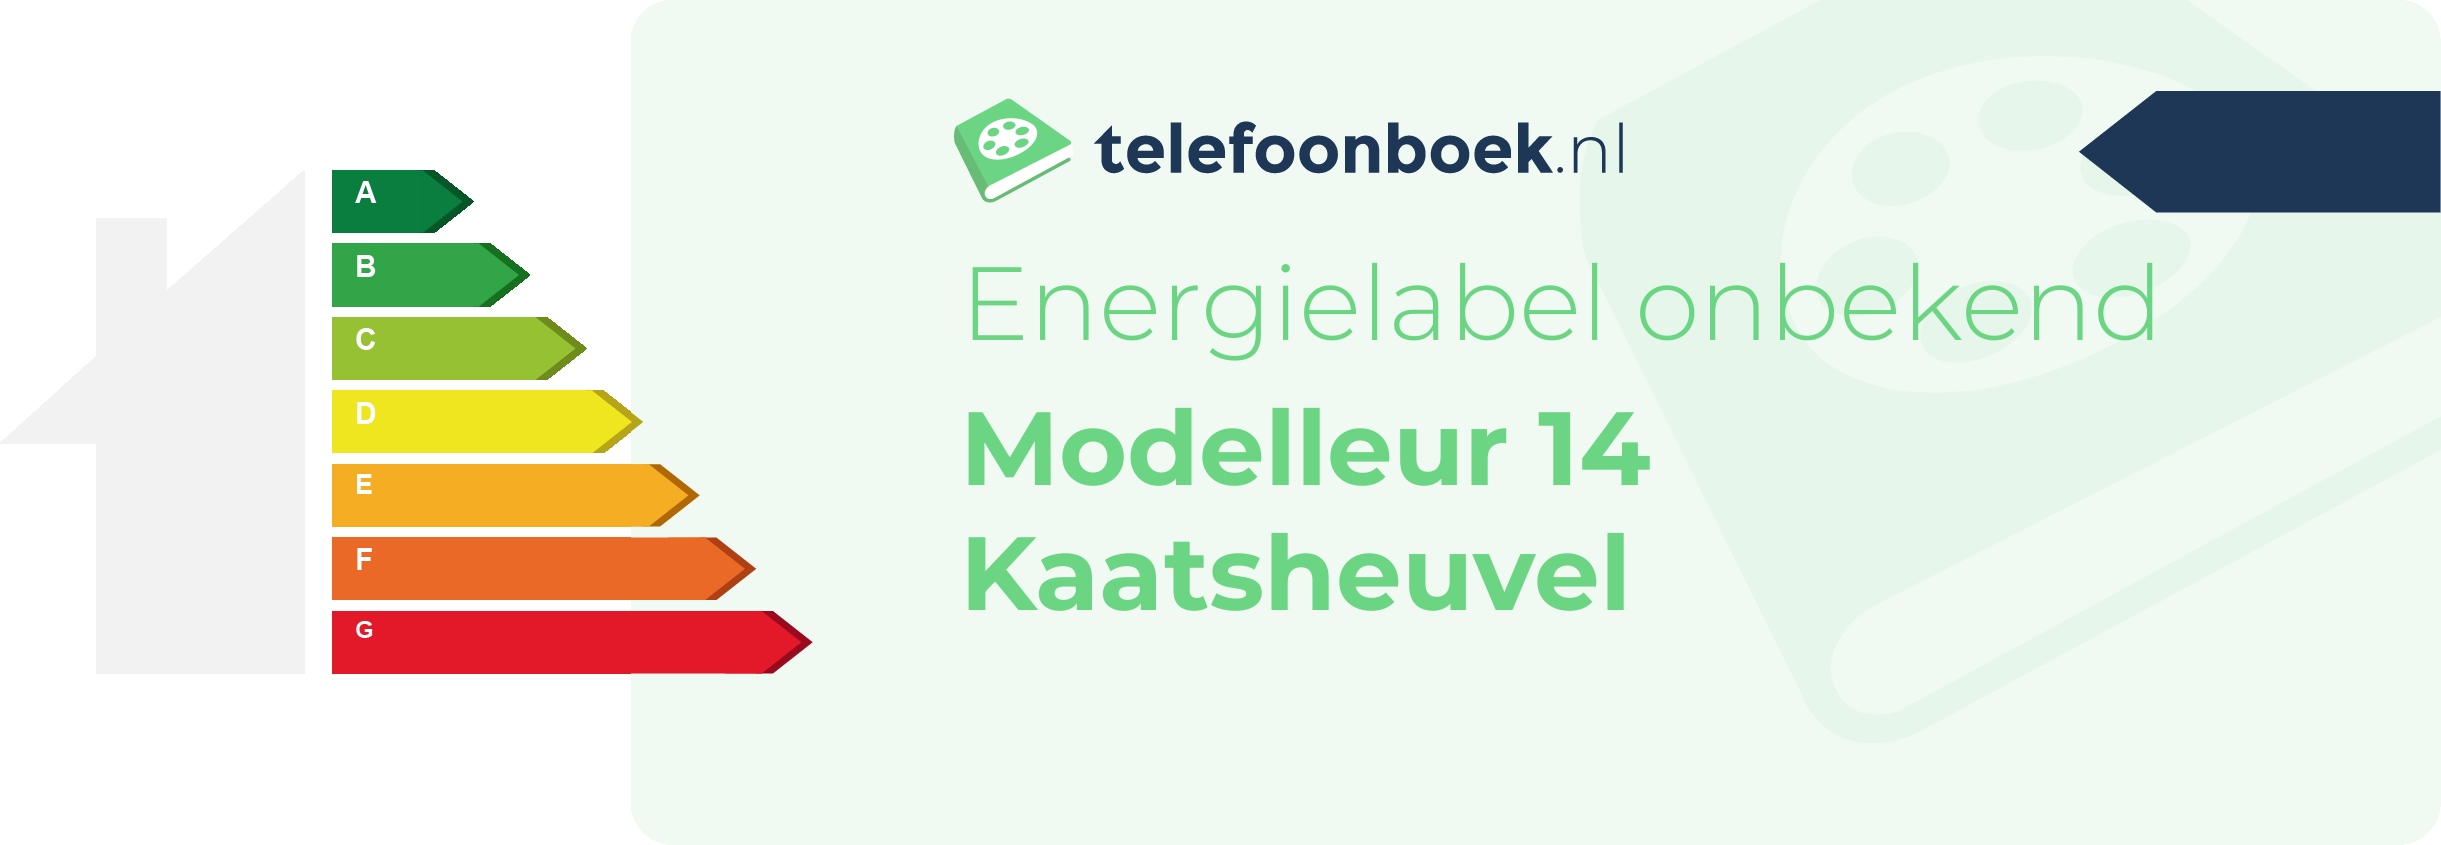 Energielabel Modelleur 14 Kaatsheuvel